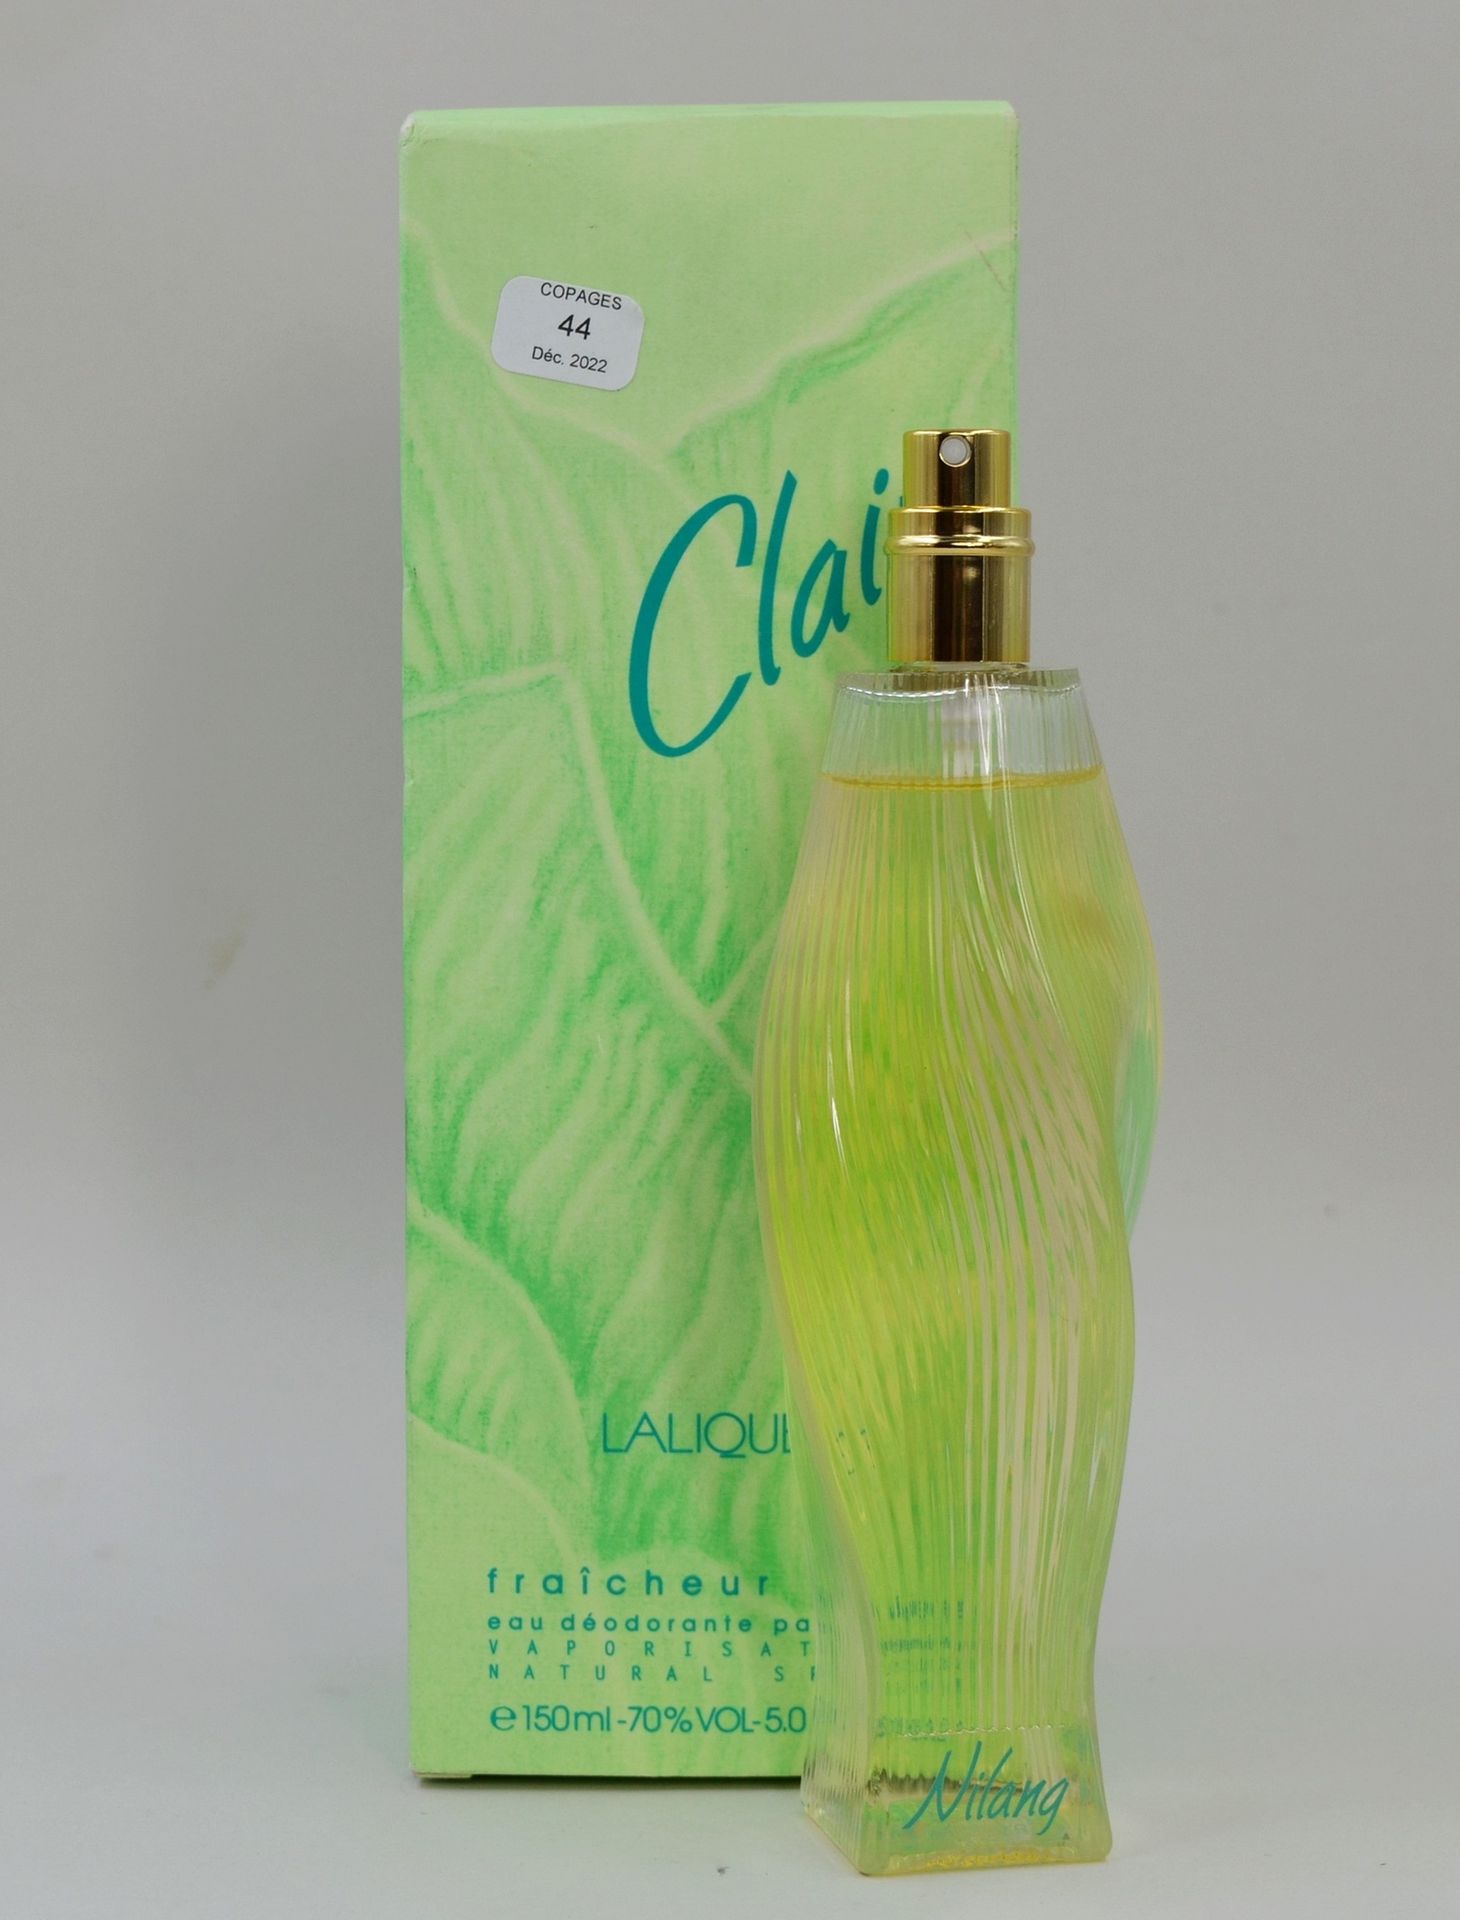 Null LALIQUE France « Claire »

Eau déodorante parfumée, contenance 150ml.